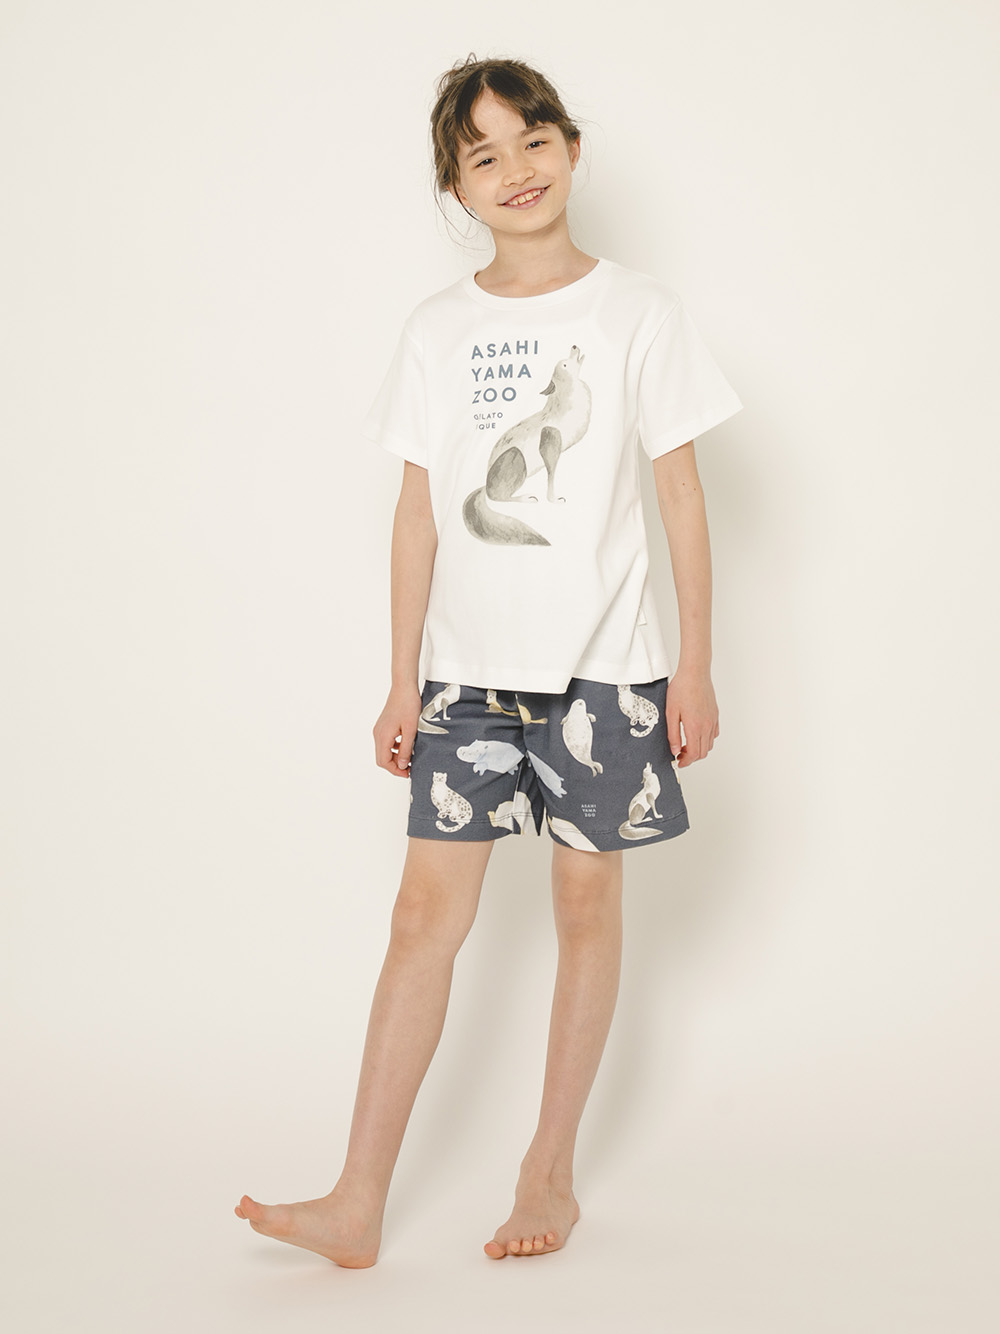 【旭山動物園】【junior】Tシャツ&ハーフパンツSET | PJCT212432